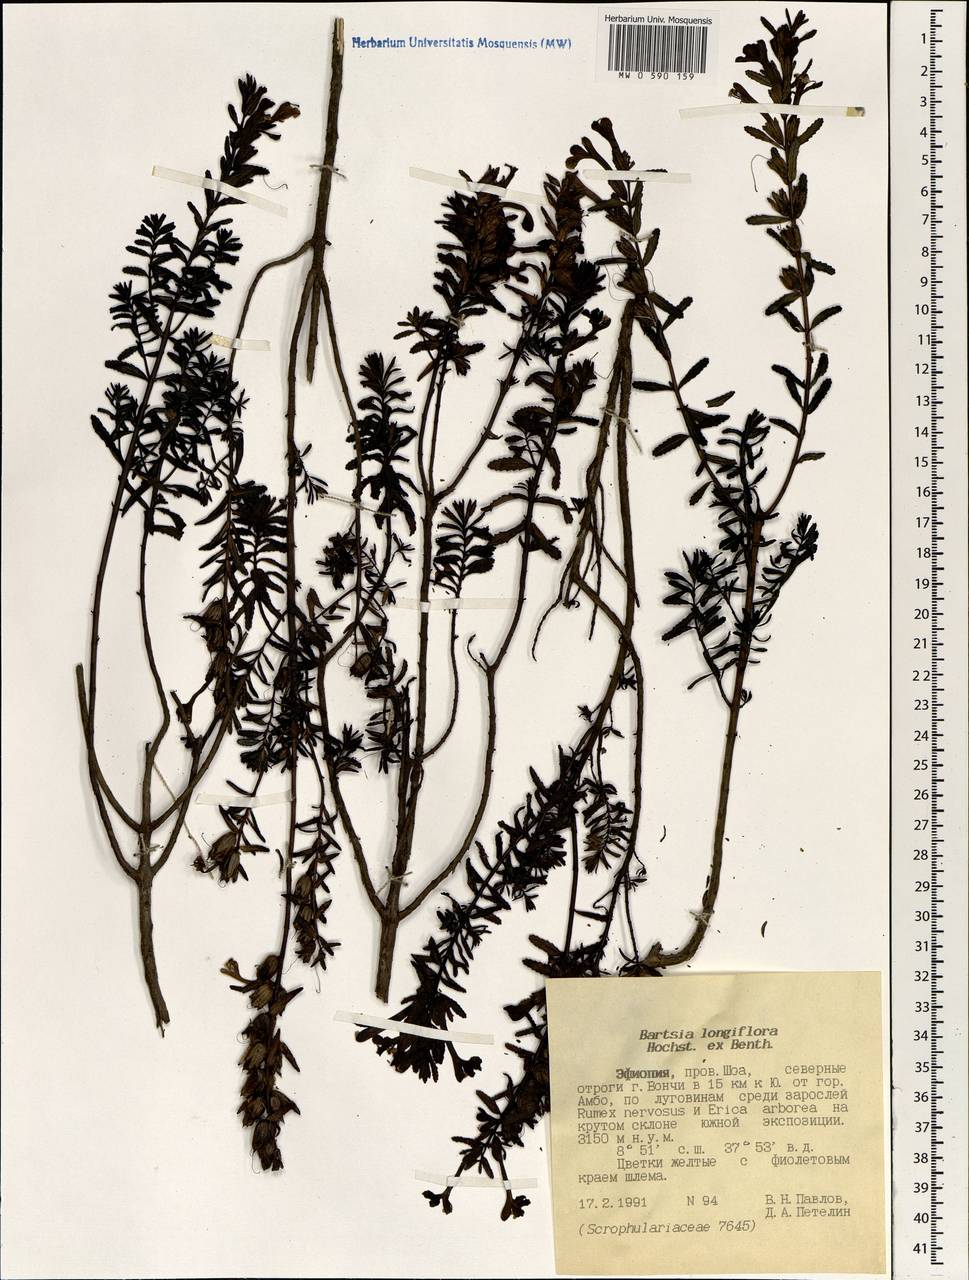 Hedbergia longiflora subsp. longiflora, Africa (AFR) (Ethiopia)